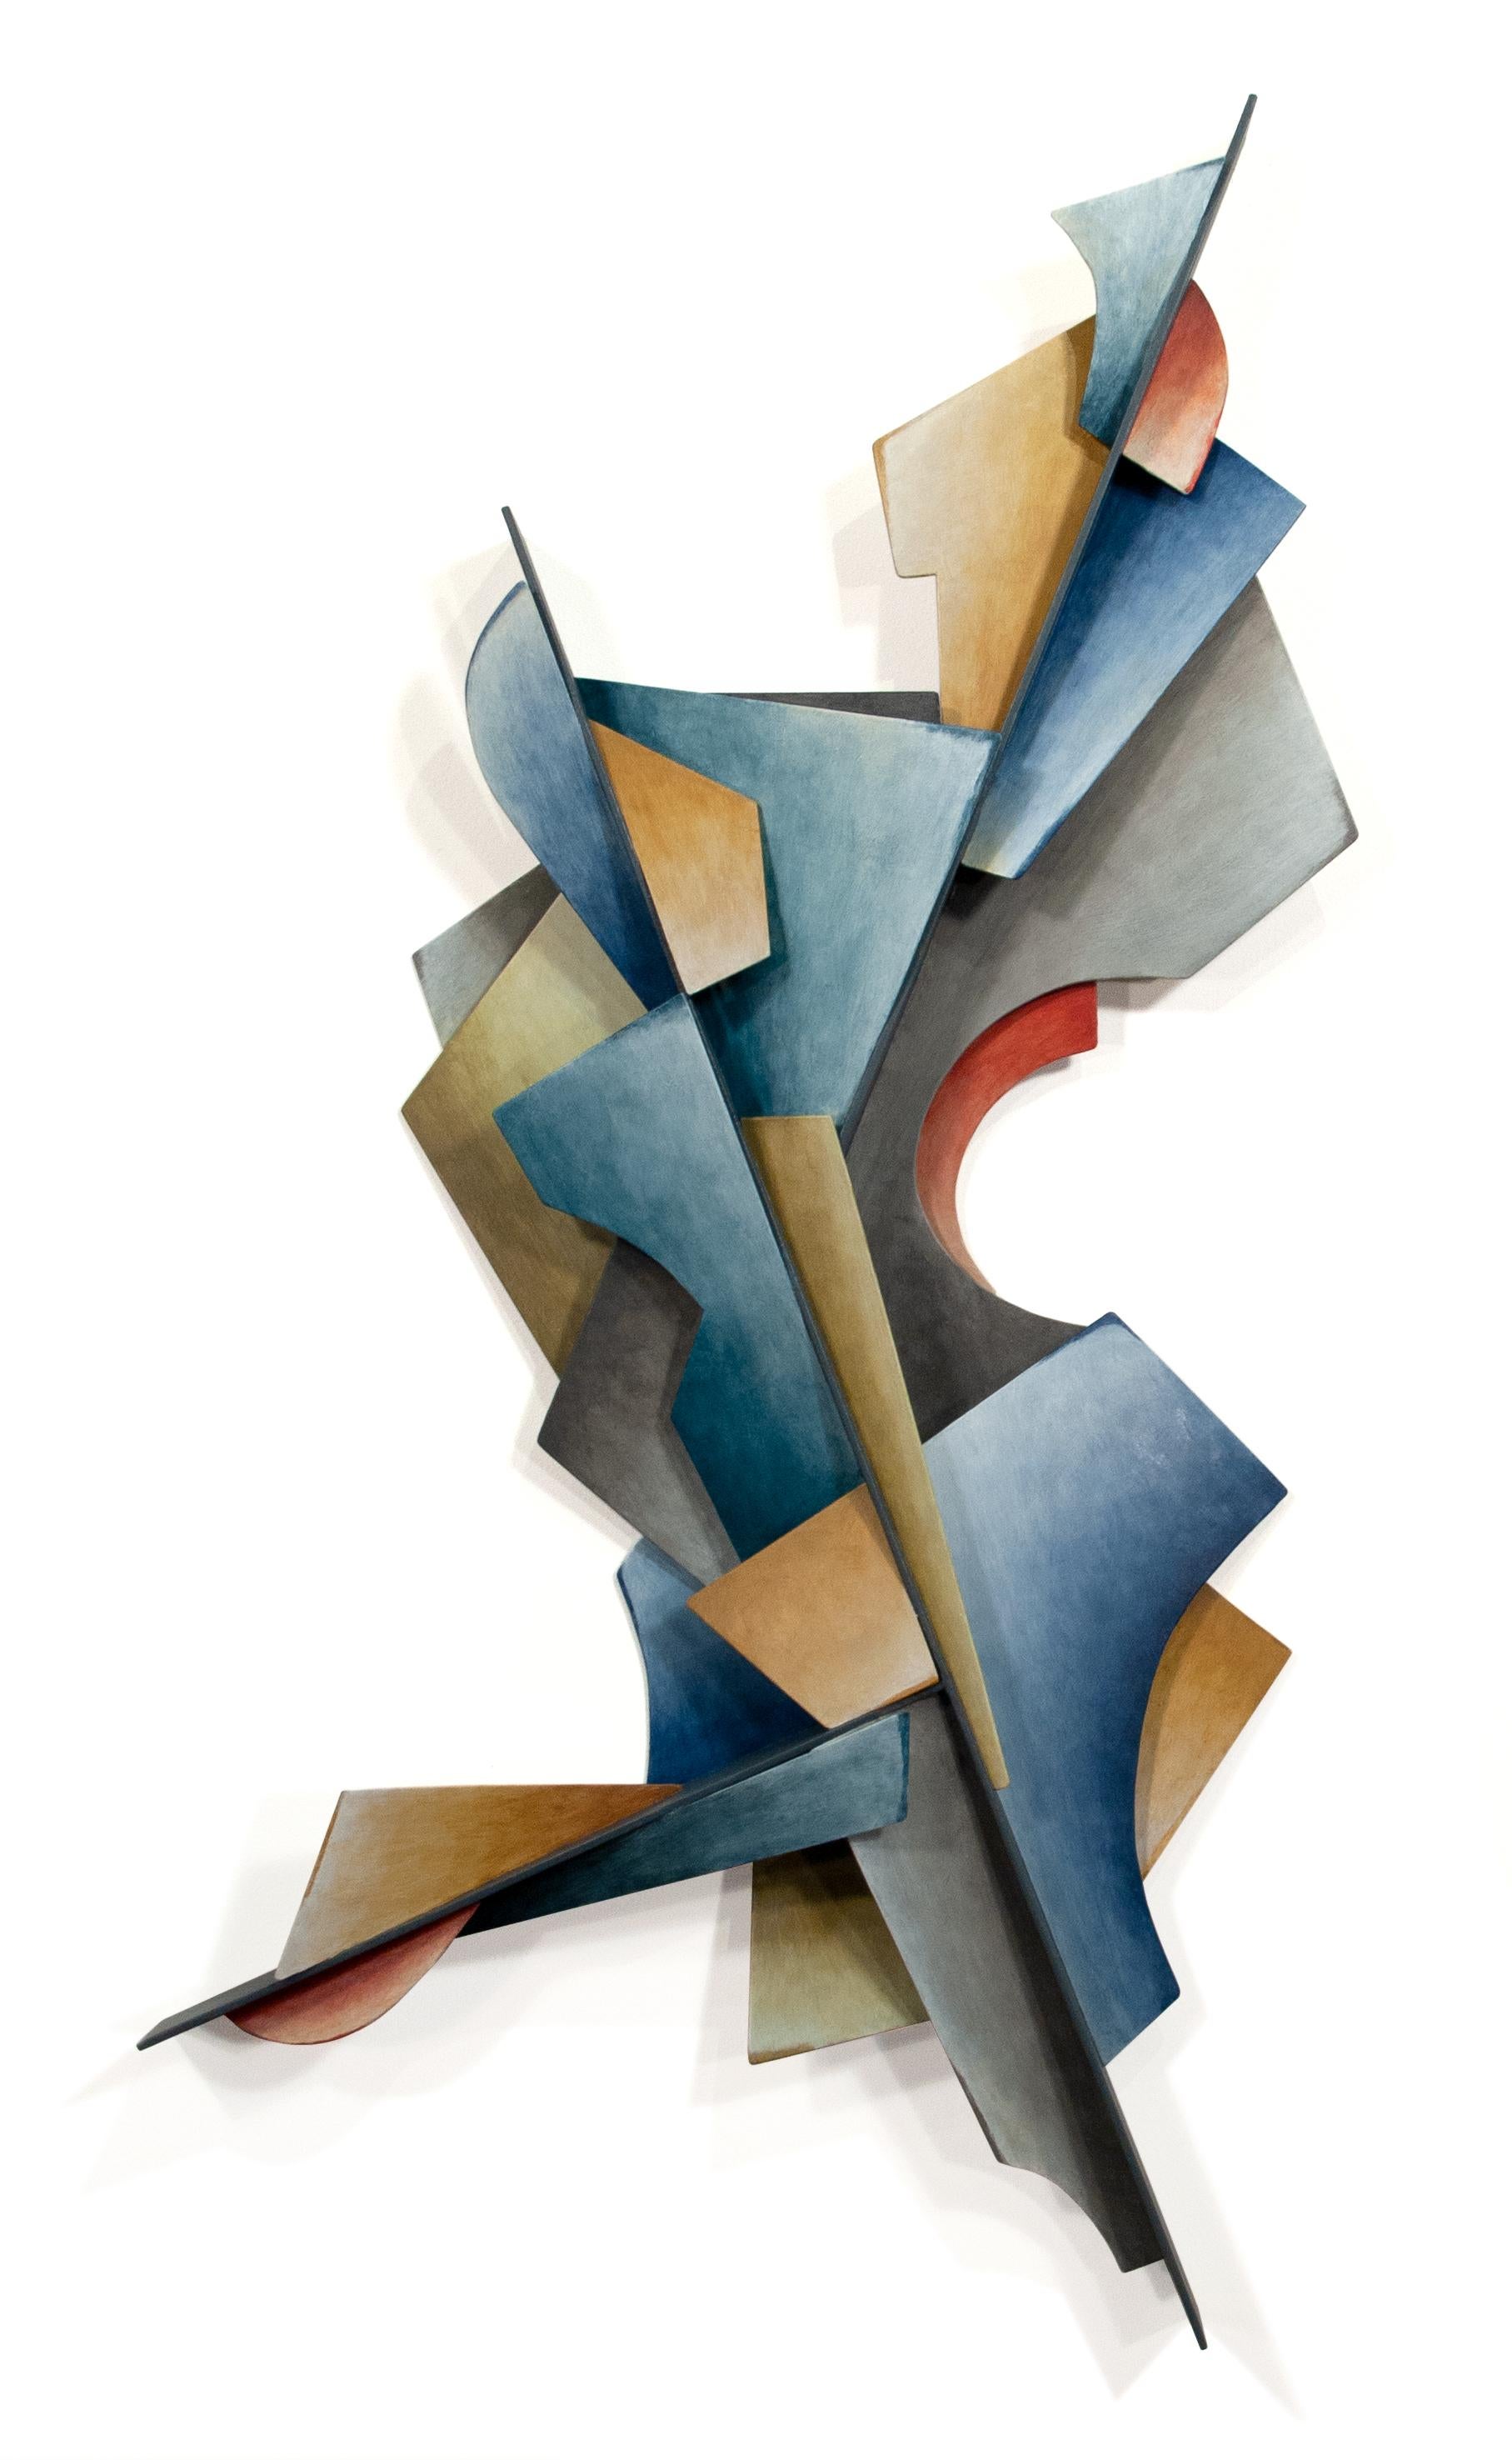 The Path – Abstrakte geometrische Form, handbemalte Wandskulptur aus geschweißtem Stahl  (Geometrische Abstraktion), Mixed Media Art, von Chris Hill